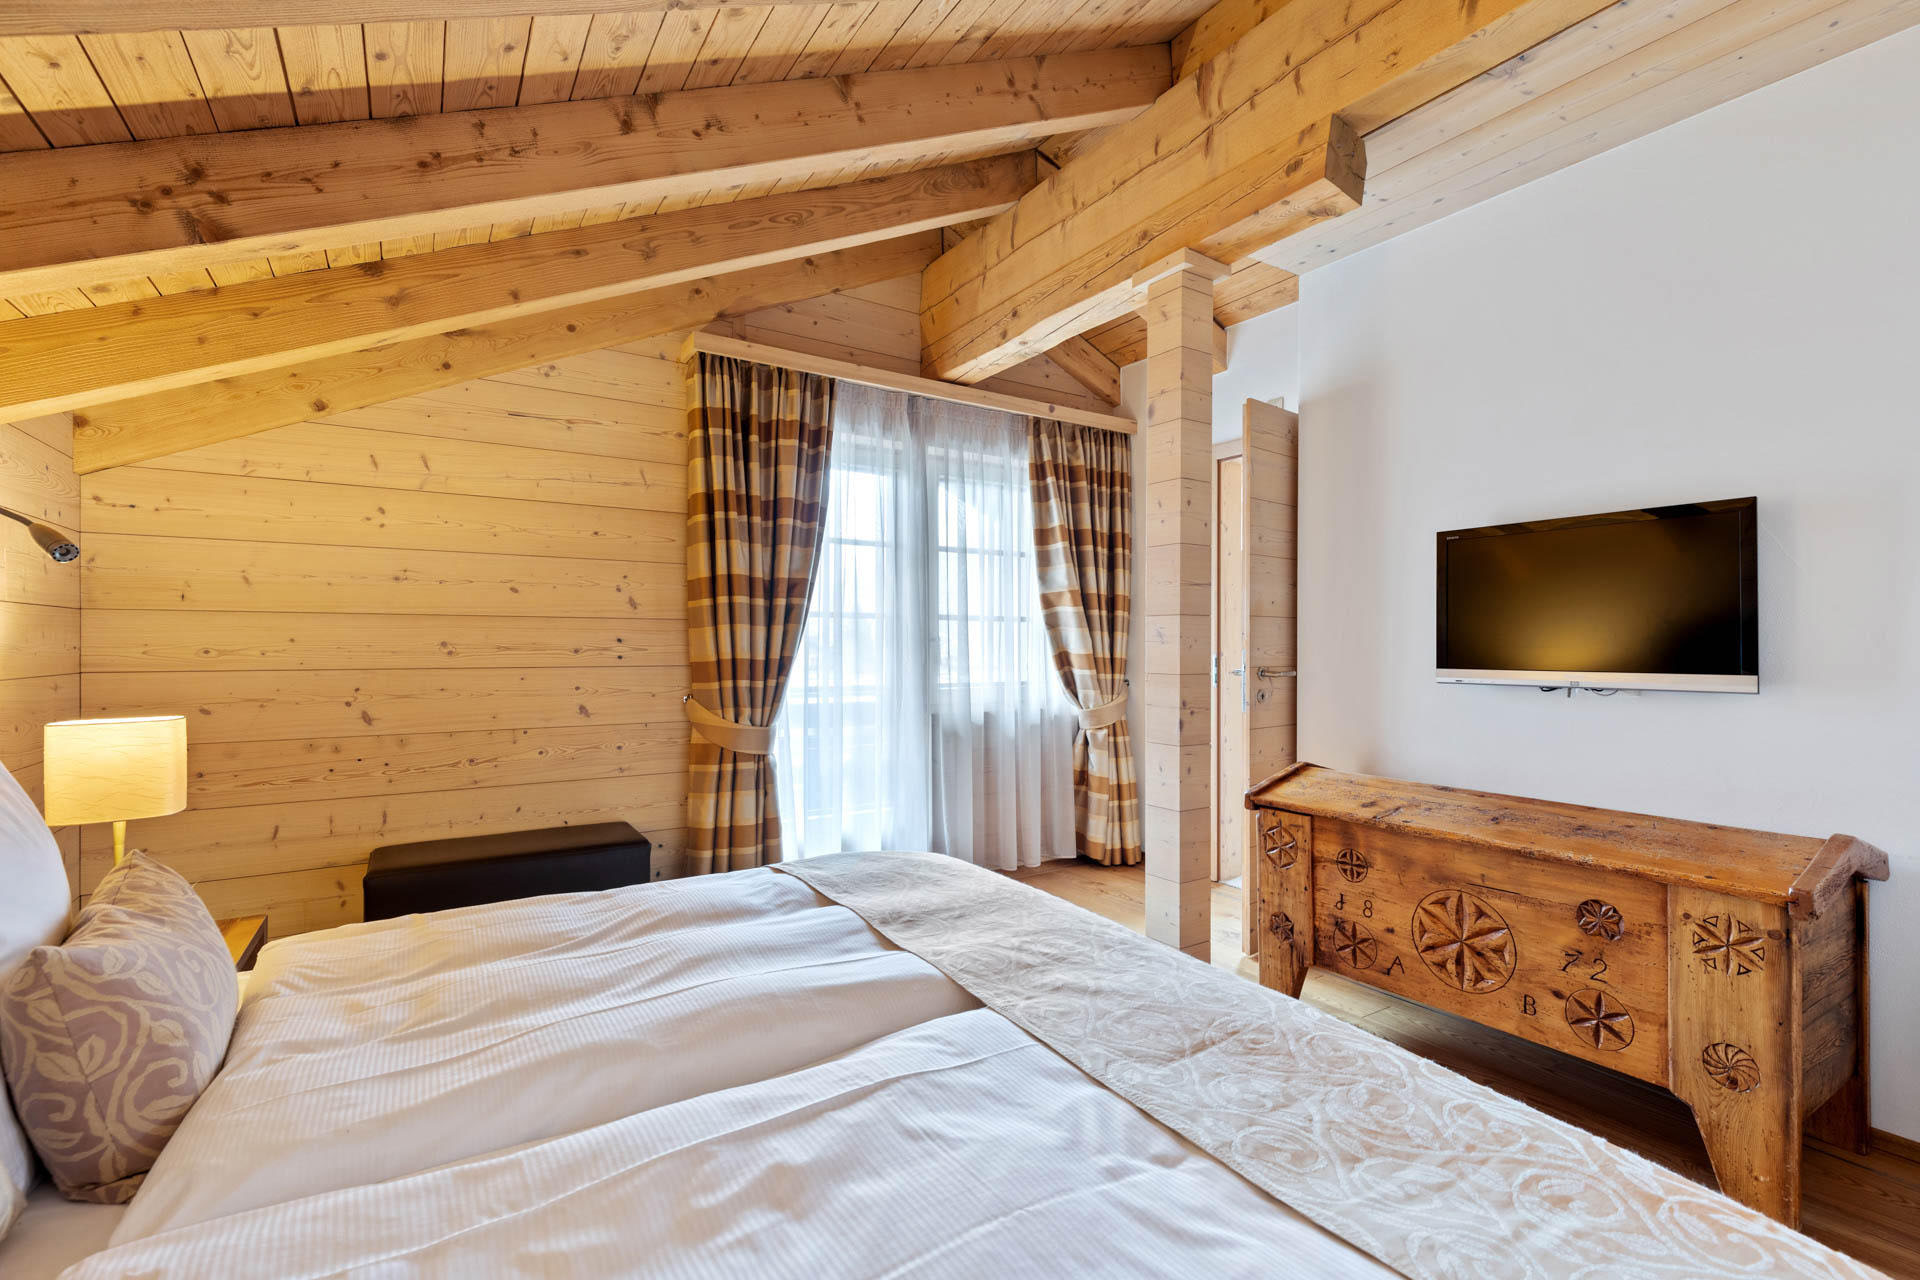 Chalet Suite Matterhorn Pine Scented Bedroom - Grand Hotel Zermatterhof